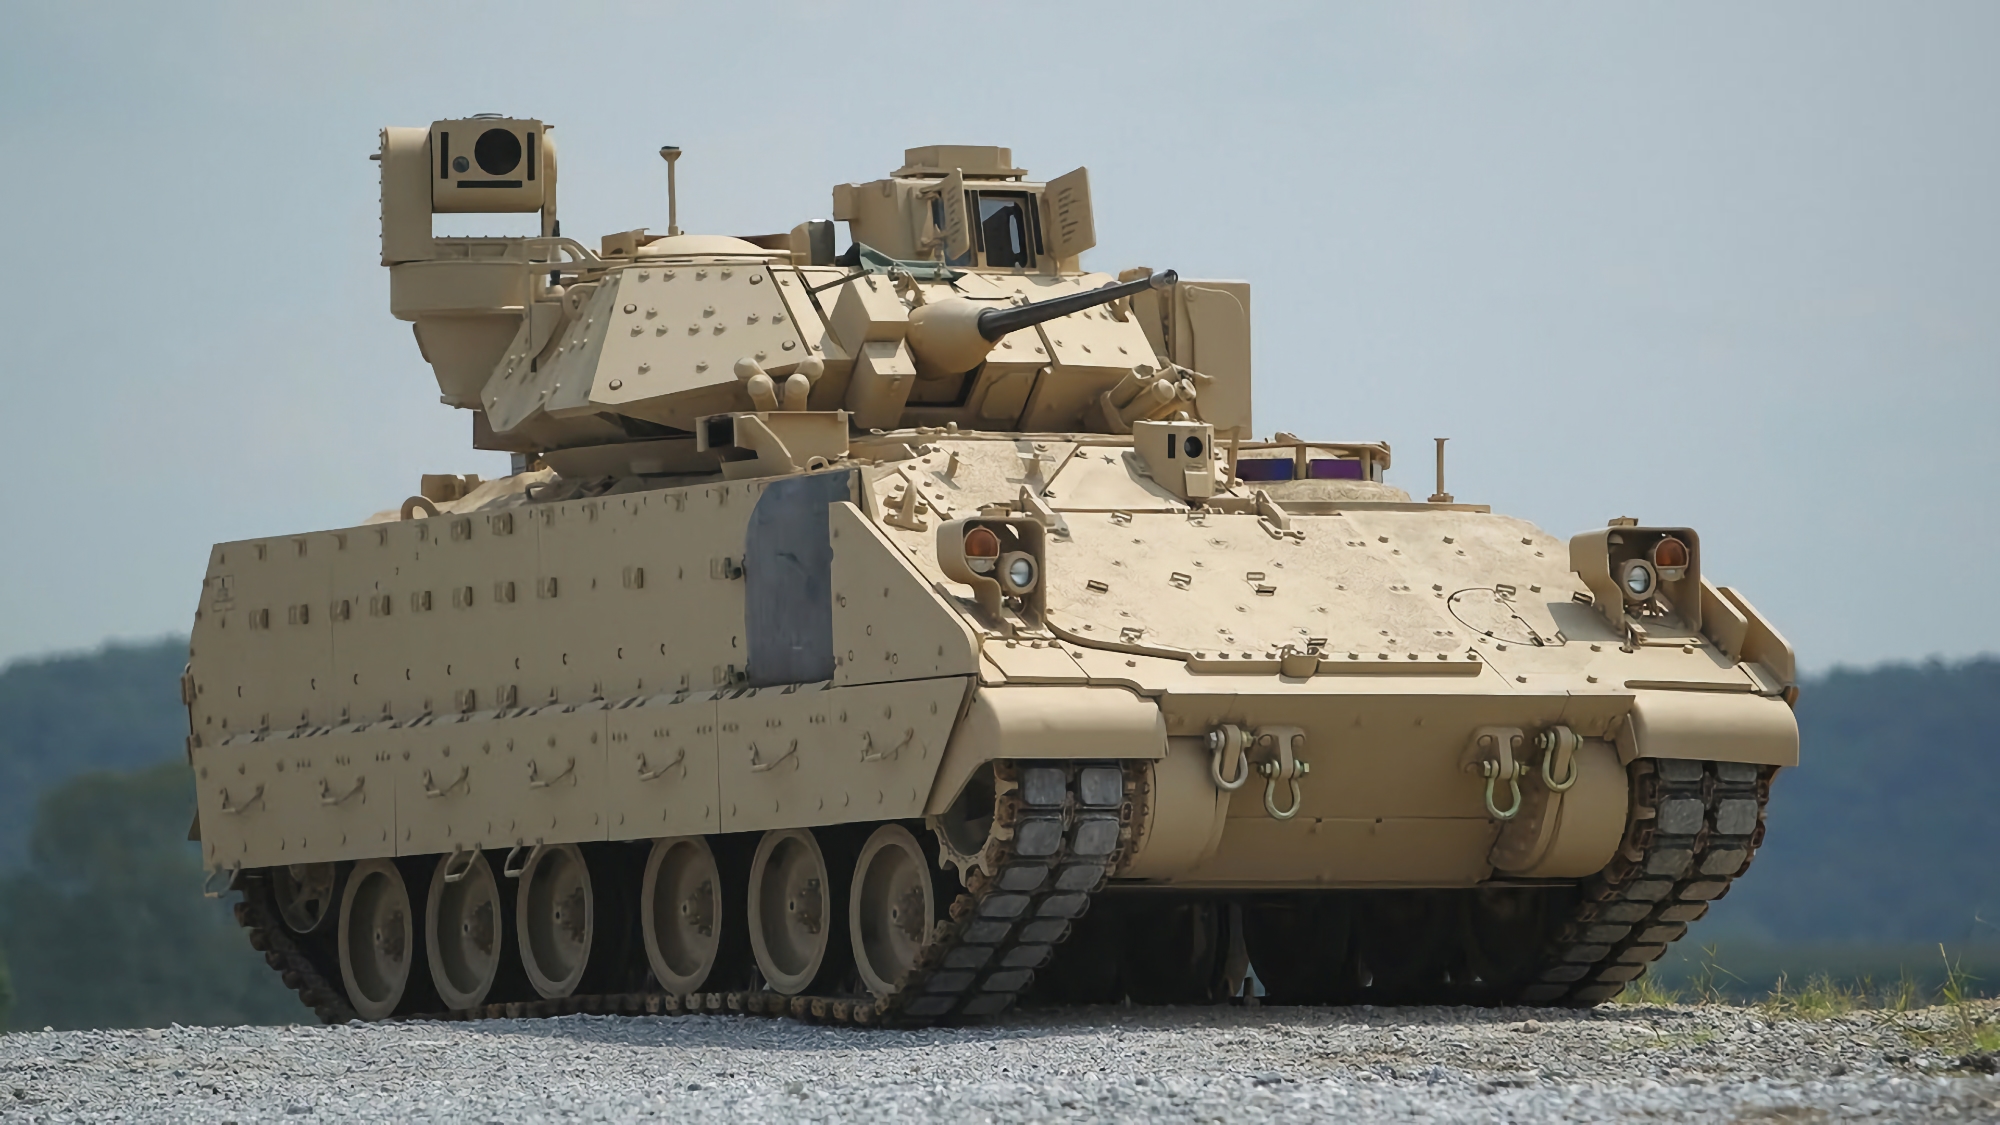 Es ist offiziell: Die USA werden M2 Bradley Schützenpanzer an die Ukraine liefern